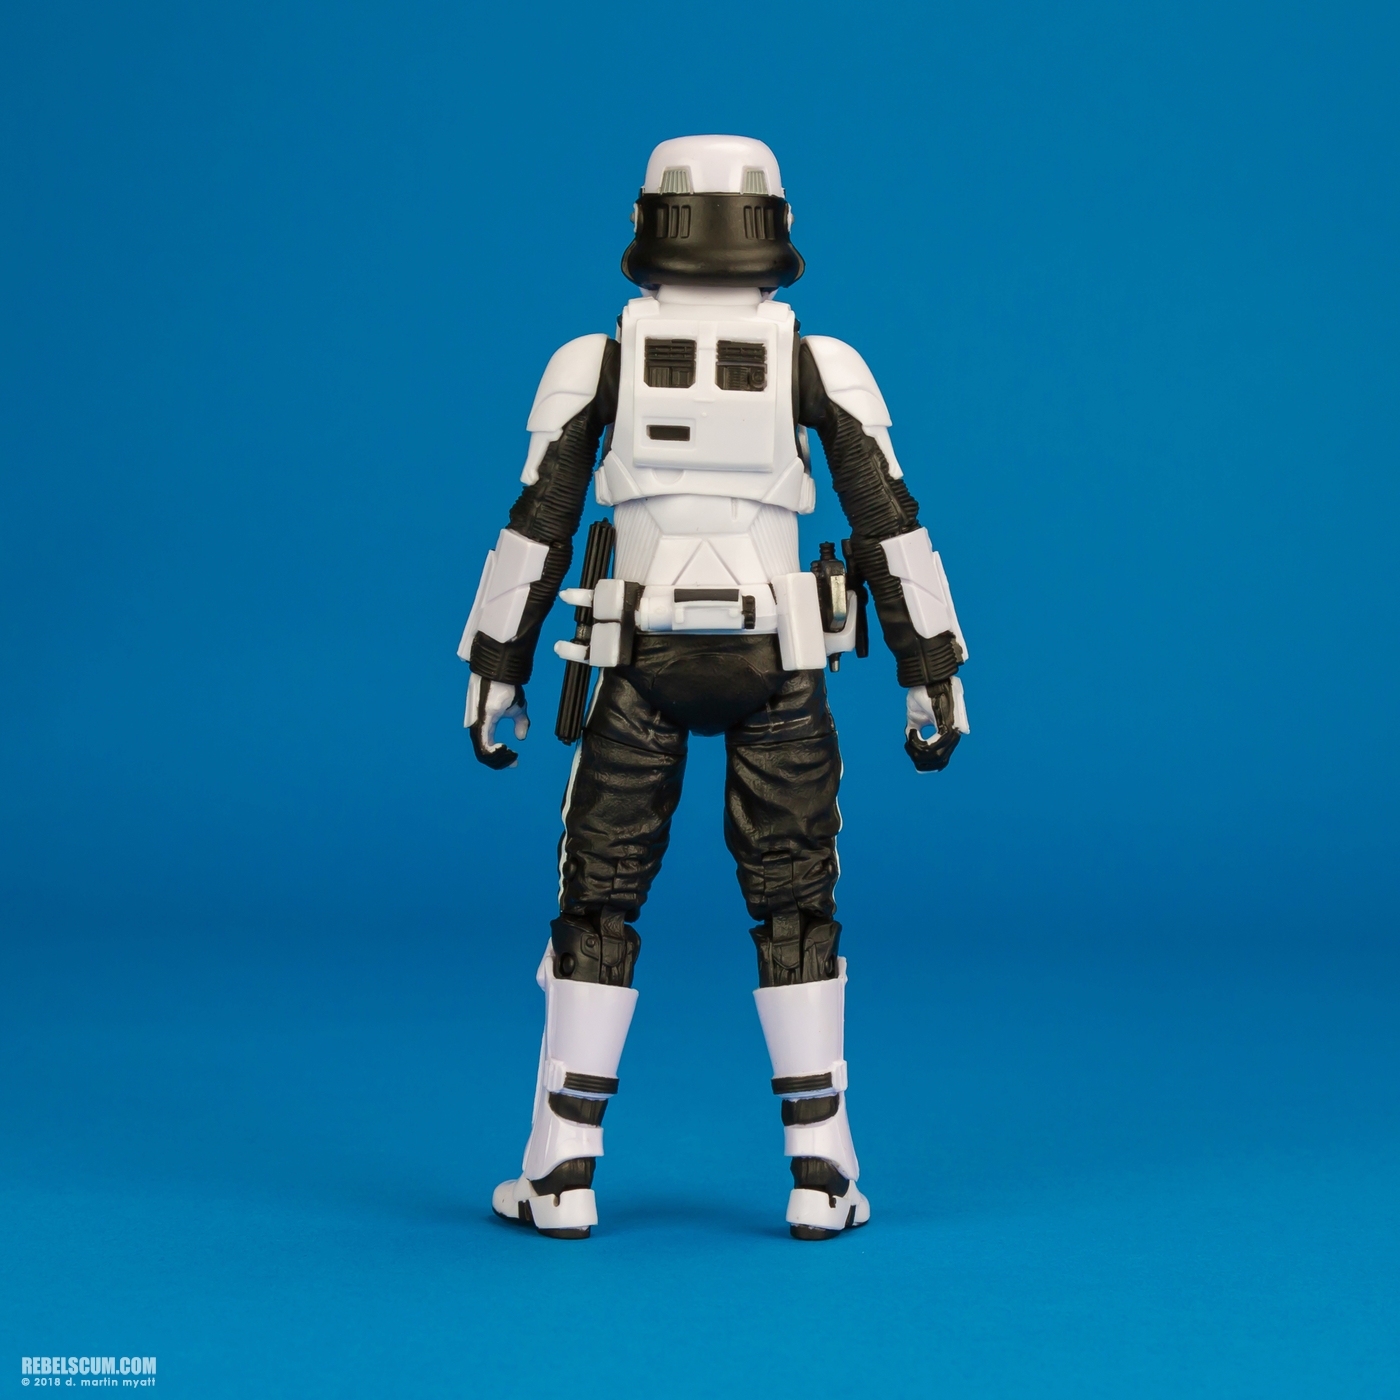 Imperial-Patrol-Trooper-72-Star-Wars-The-Black-Series-004.jpg